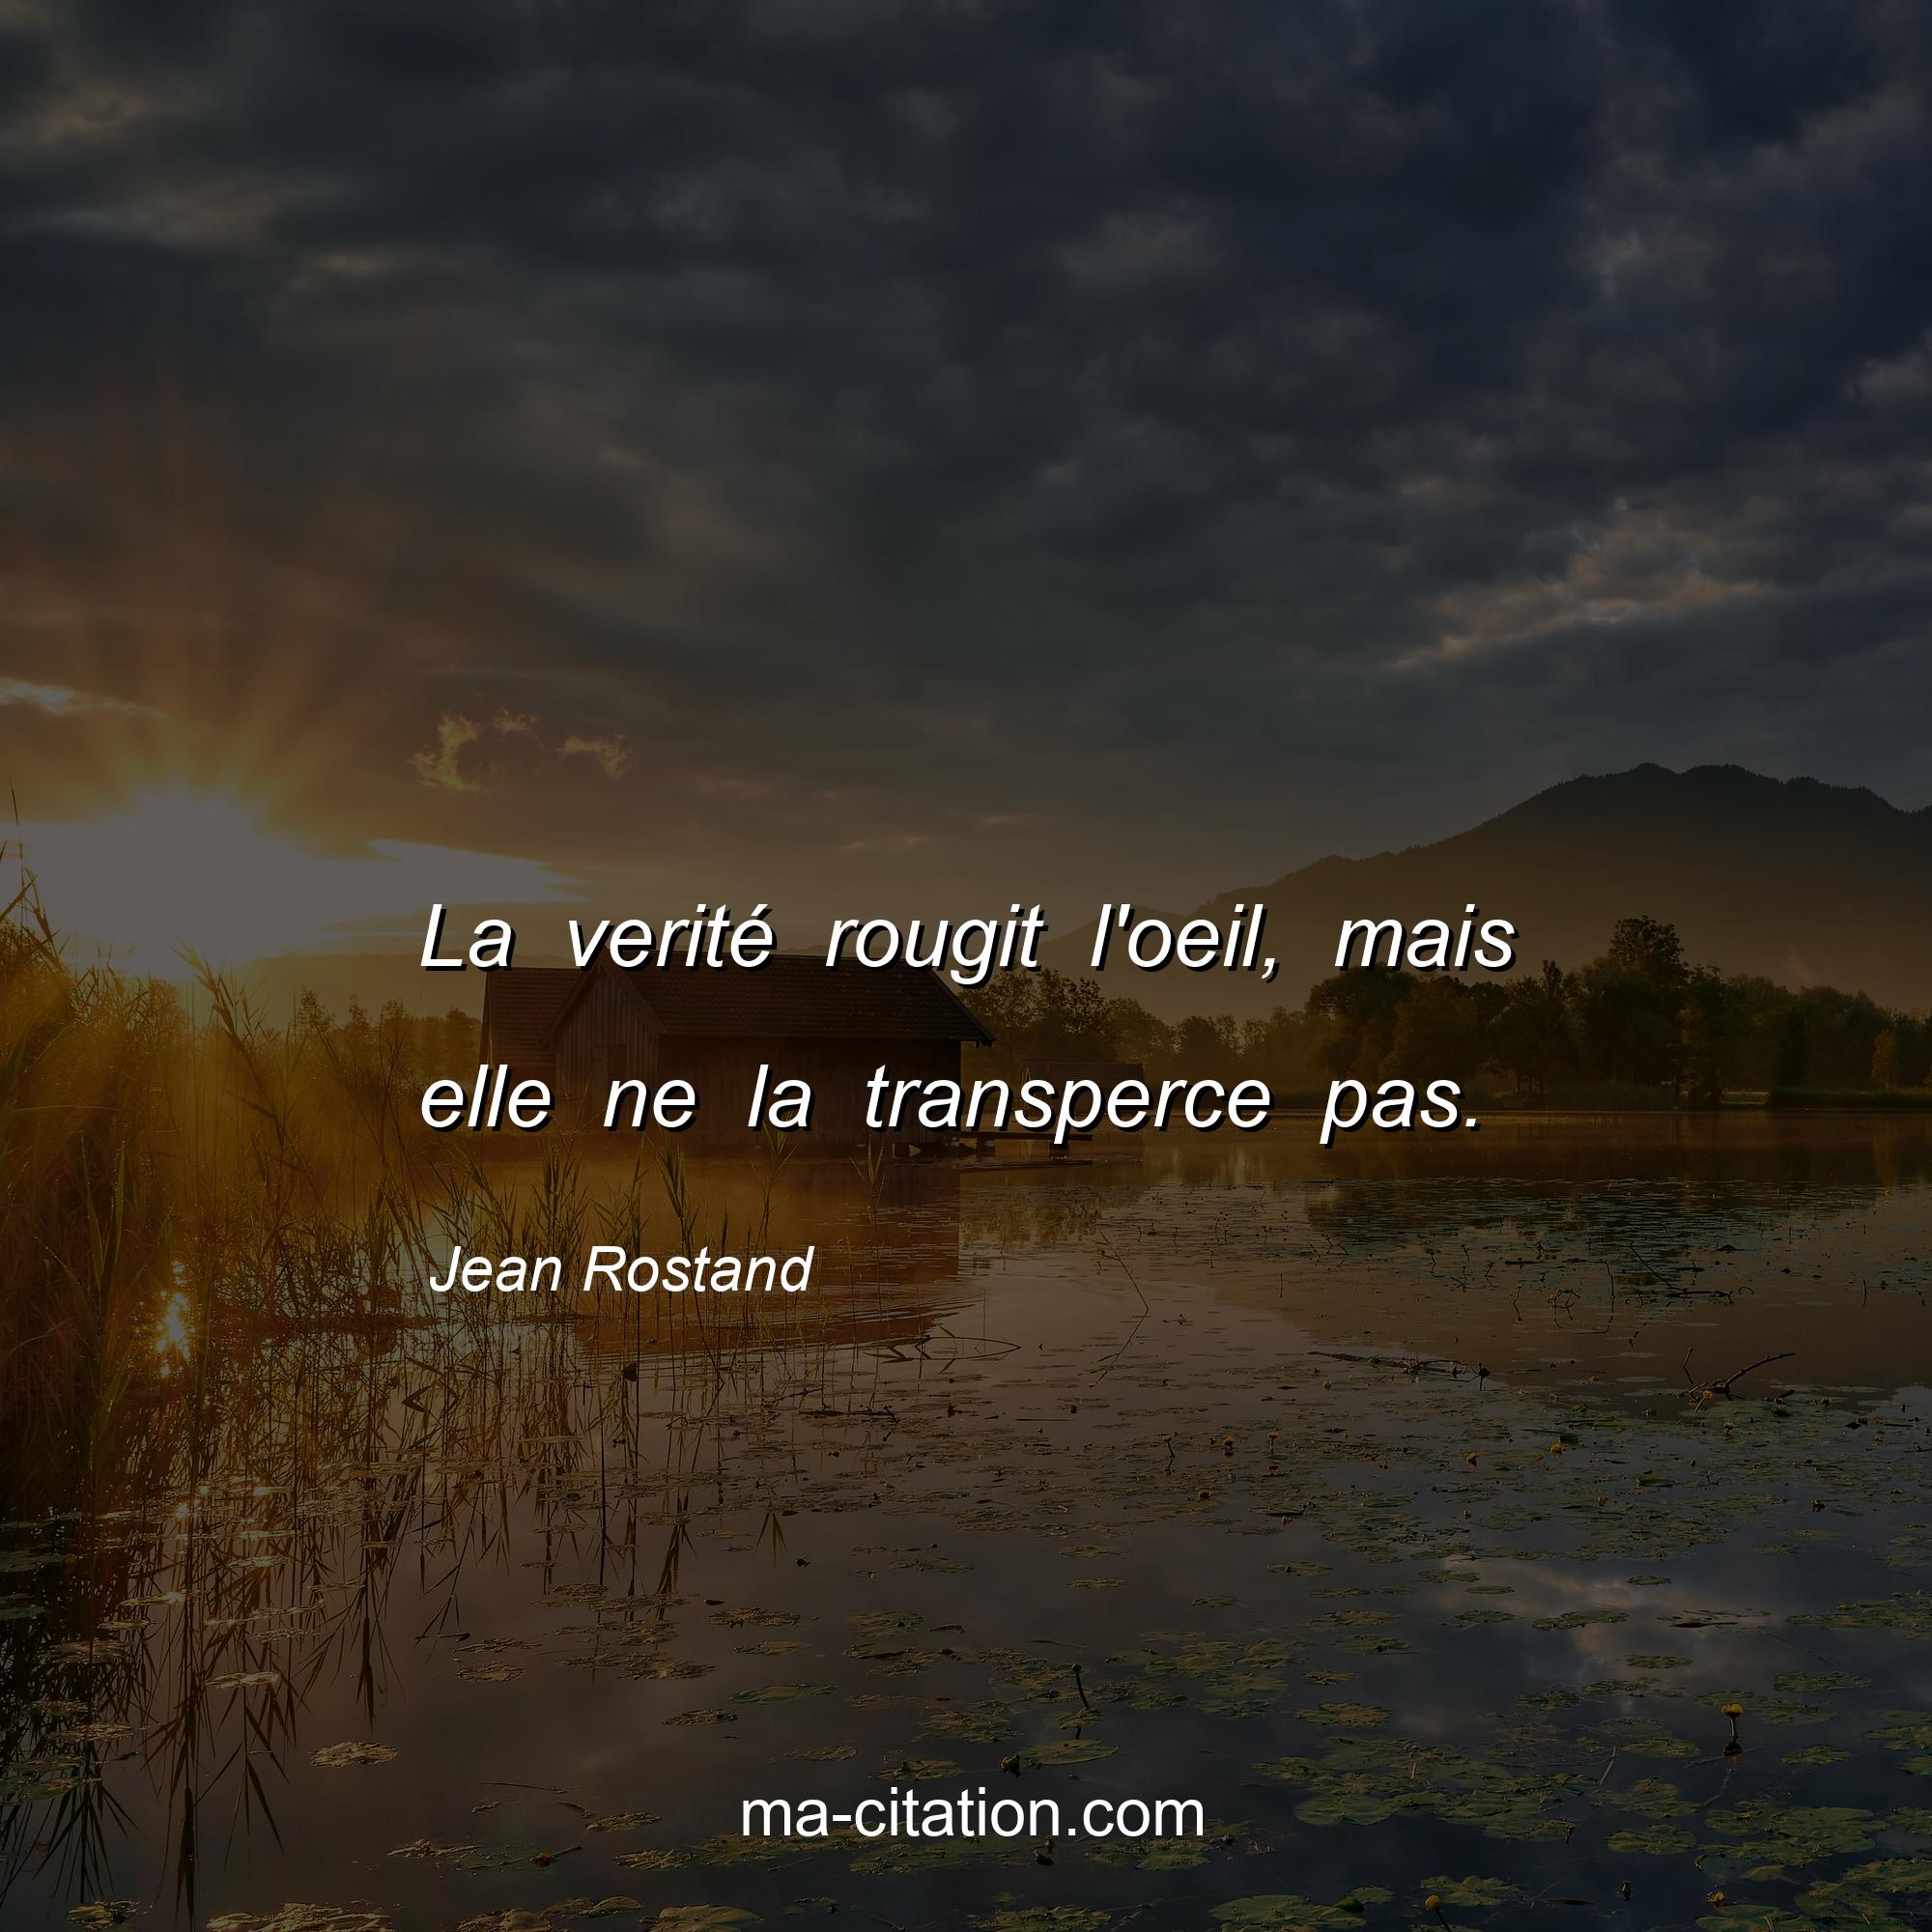 Jean Rostand : La verité rougit l'oeil, mais elle ne la transperce pas.